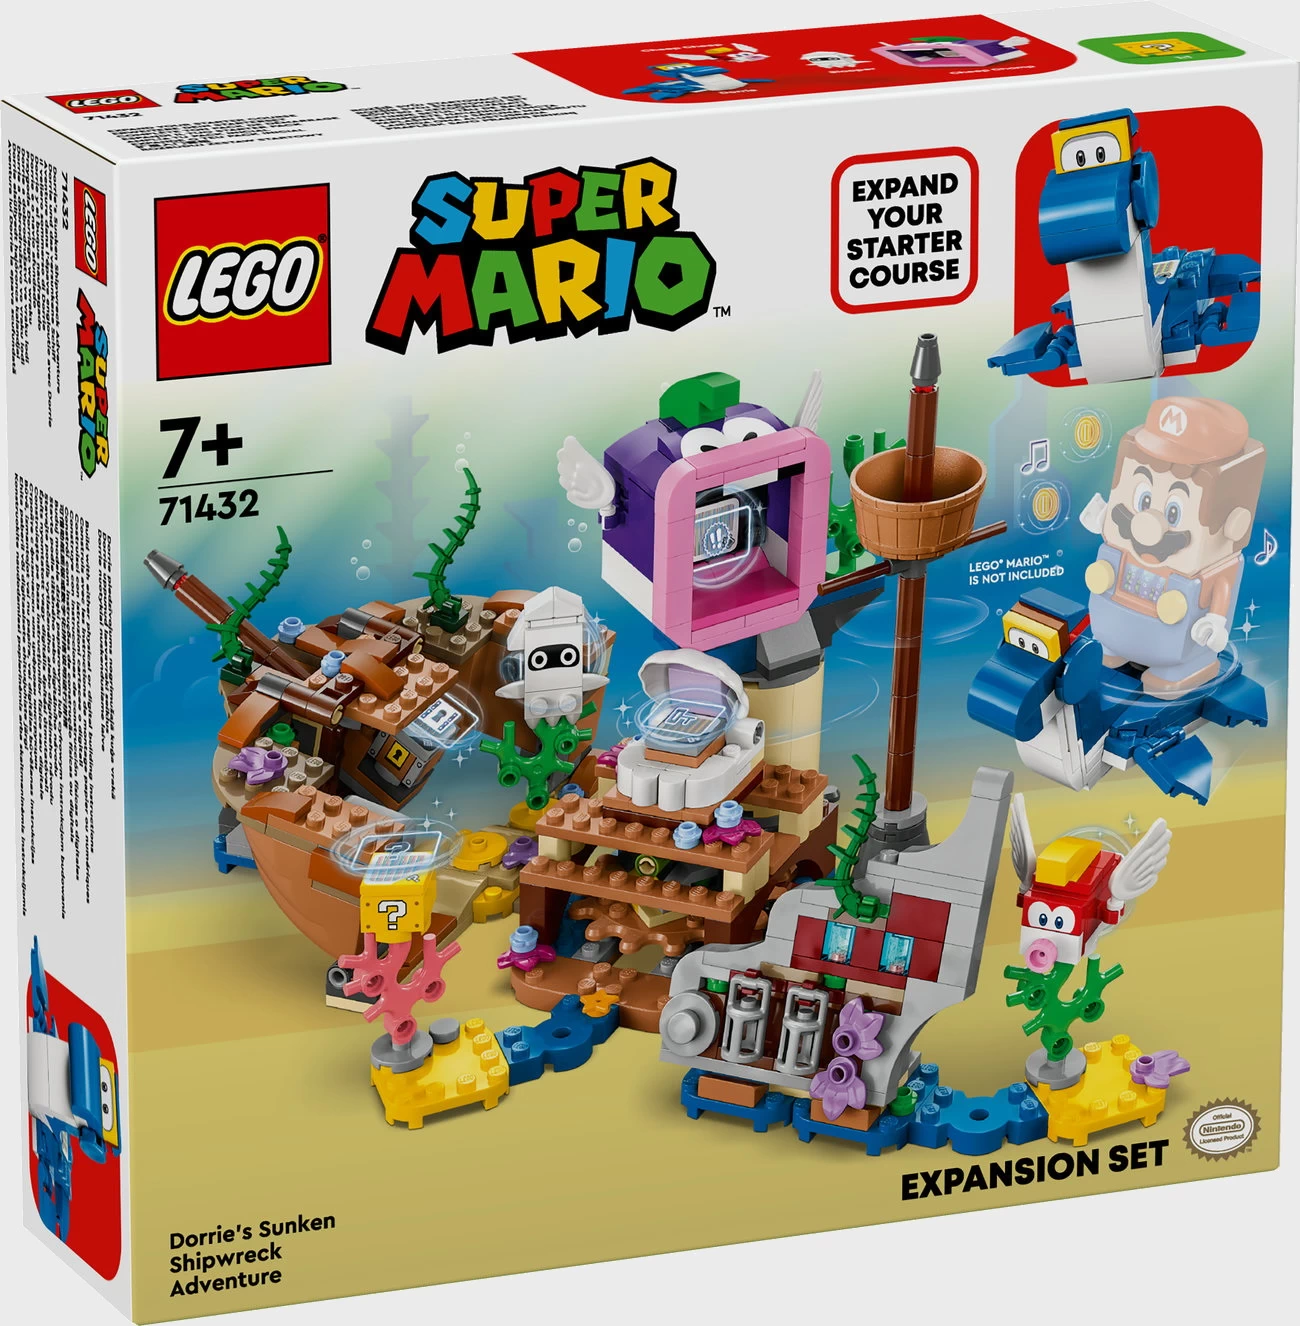 LEGO Super Mario 71432 - Dorrie und das versunkene Schiff - Erweiterungsset